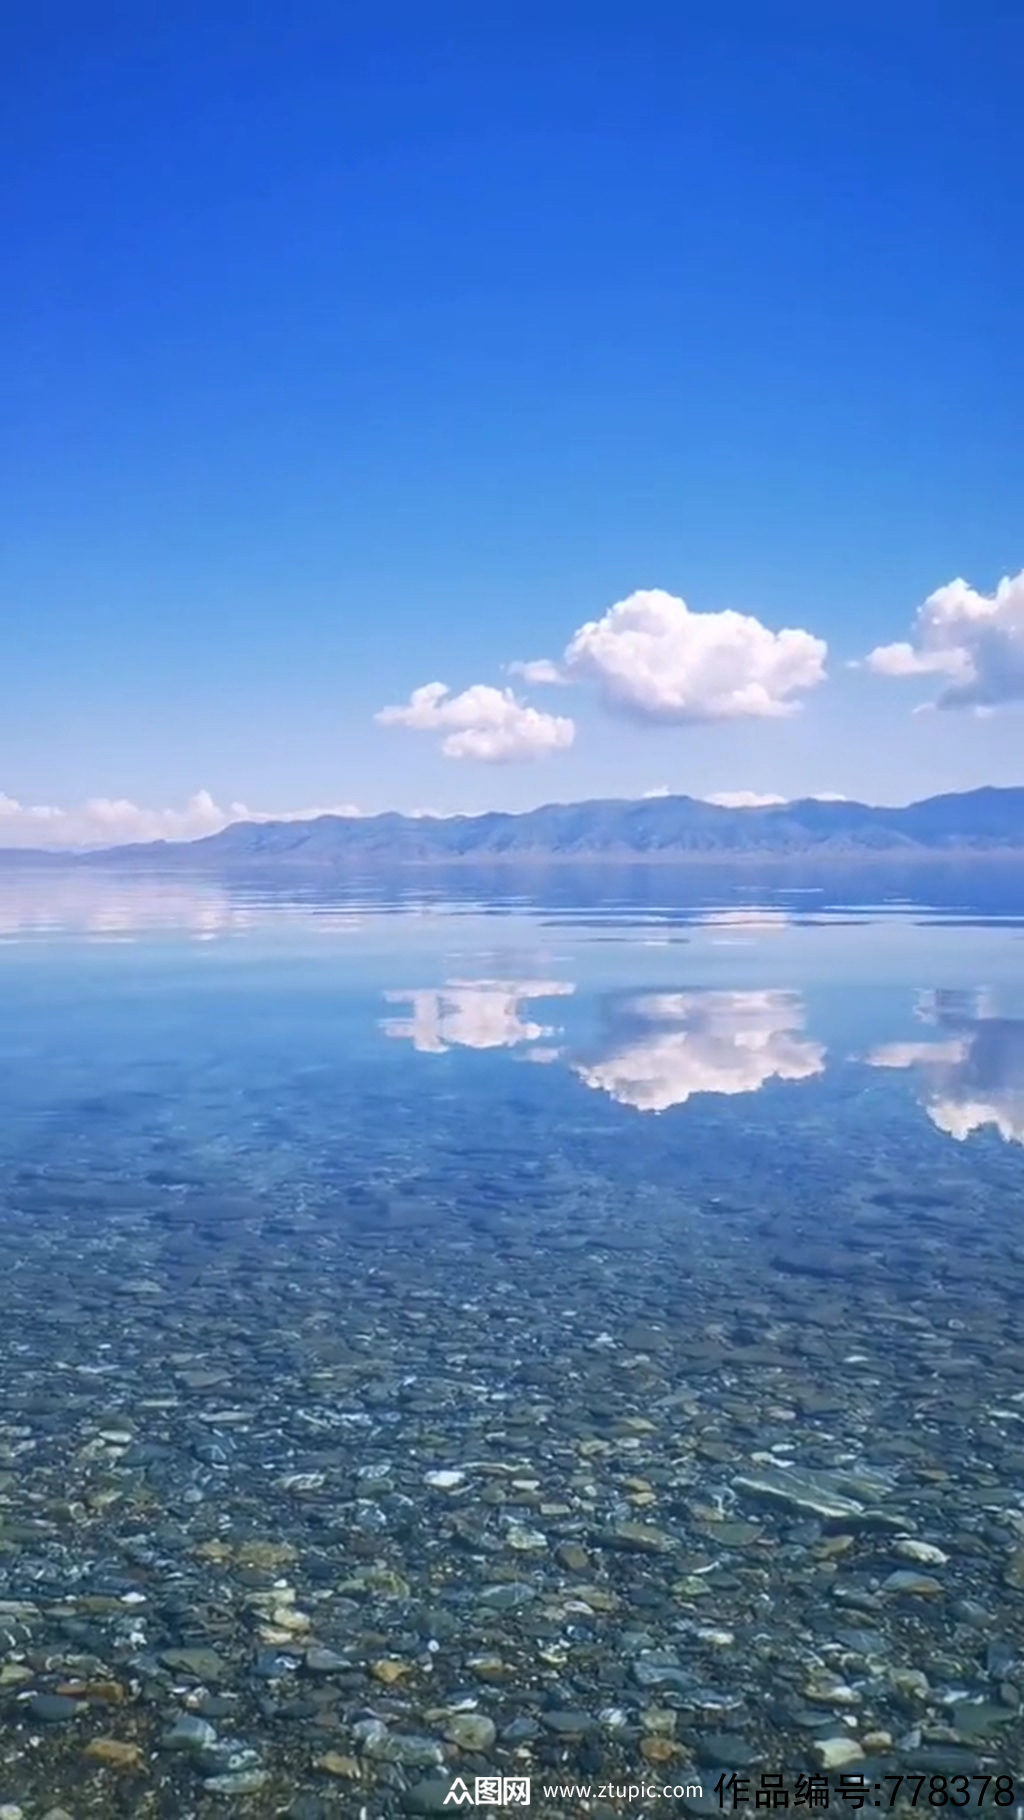 湖泊湖面唯美大自然风光风景自媒体实拍